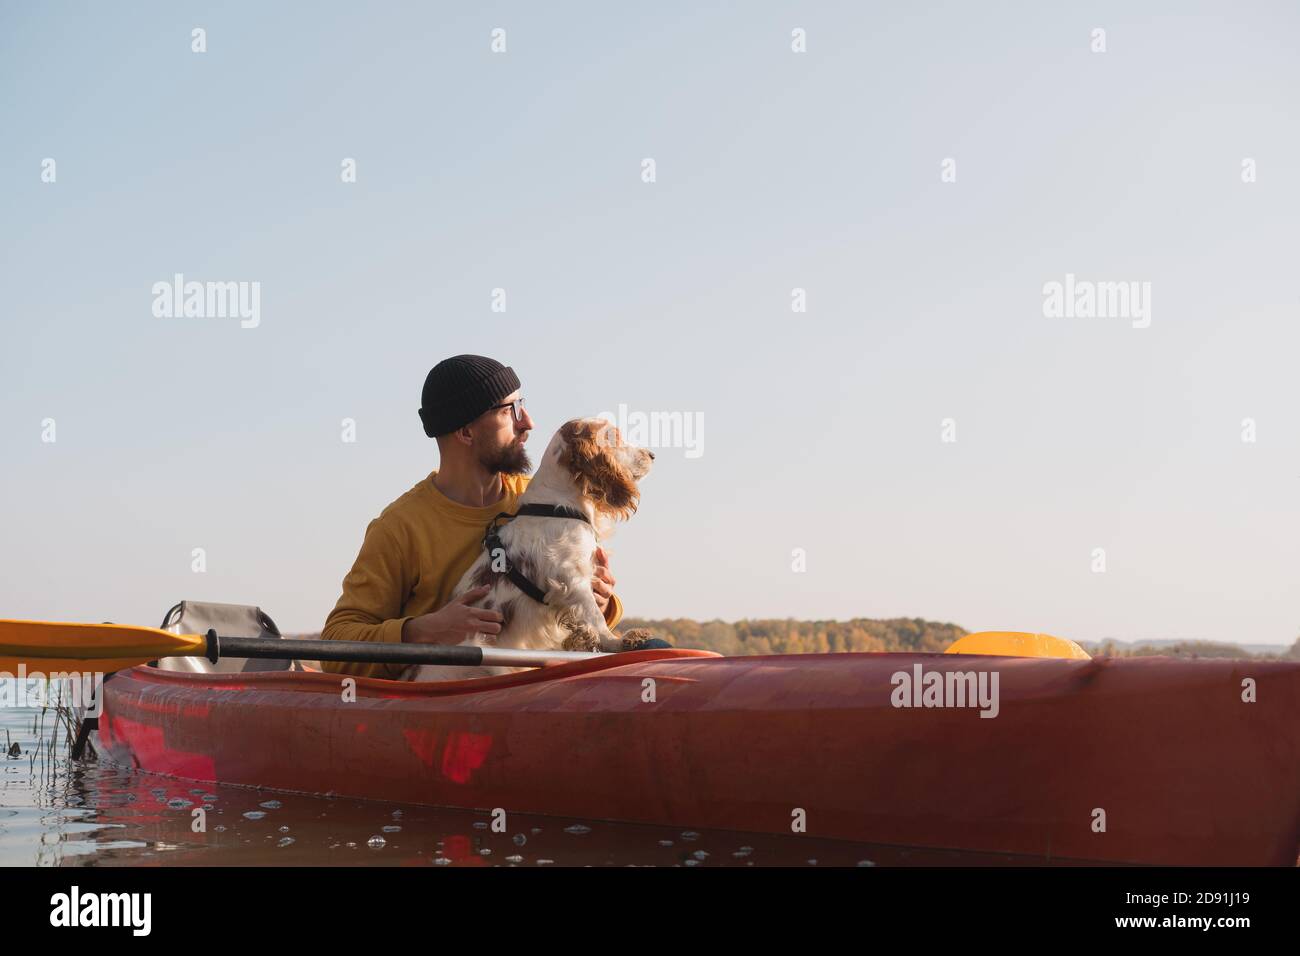 Kajakfahren mit Hunden: Der Mann sitzt in einem Ruderboot auf dem See neben seinem Spaniel. Aktive Erholung und Abenteuer mit Haustieren, Kanu fahren mit Hund Stockfoto